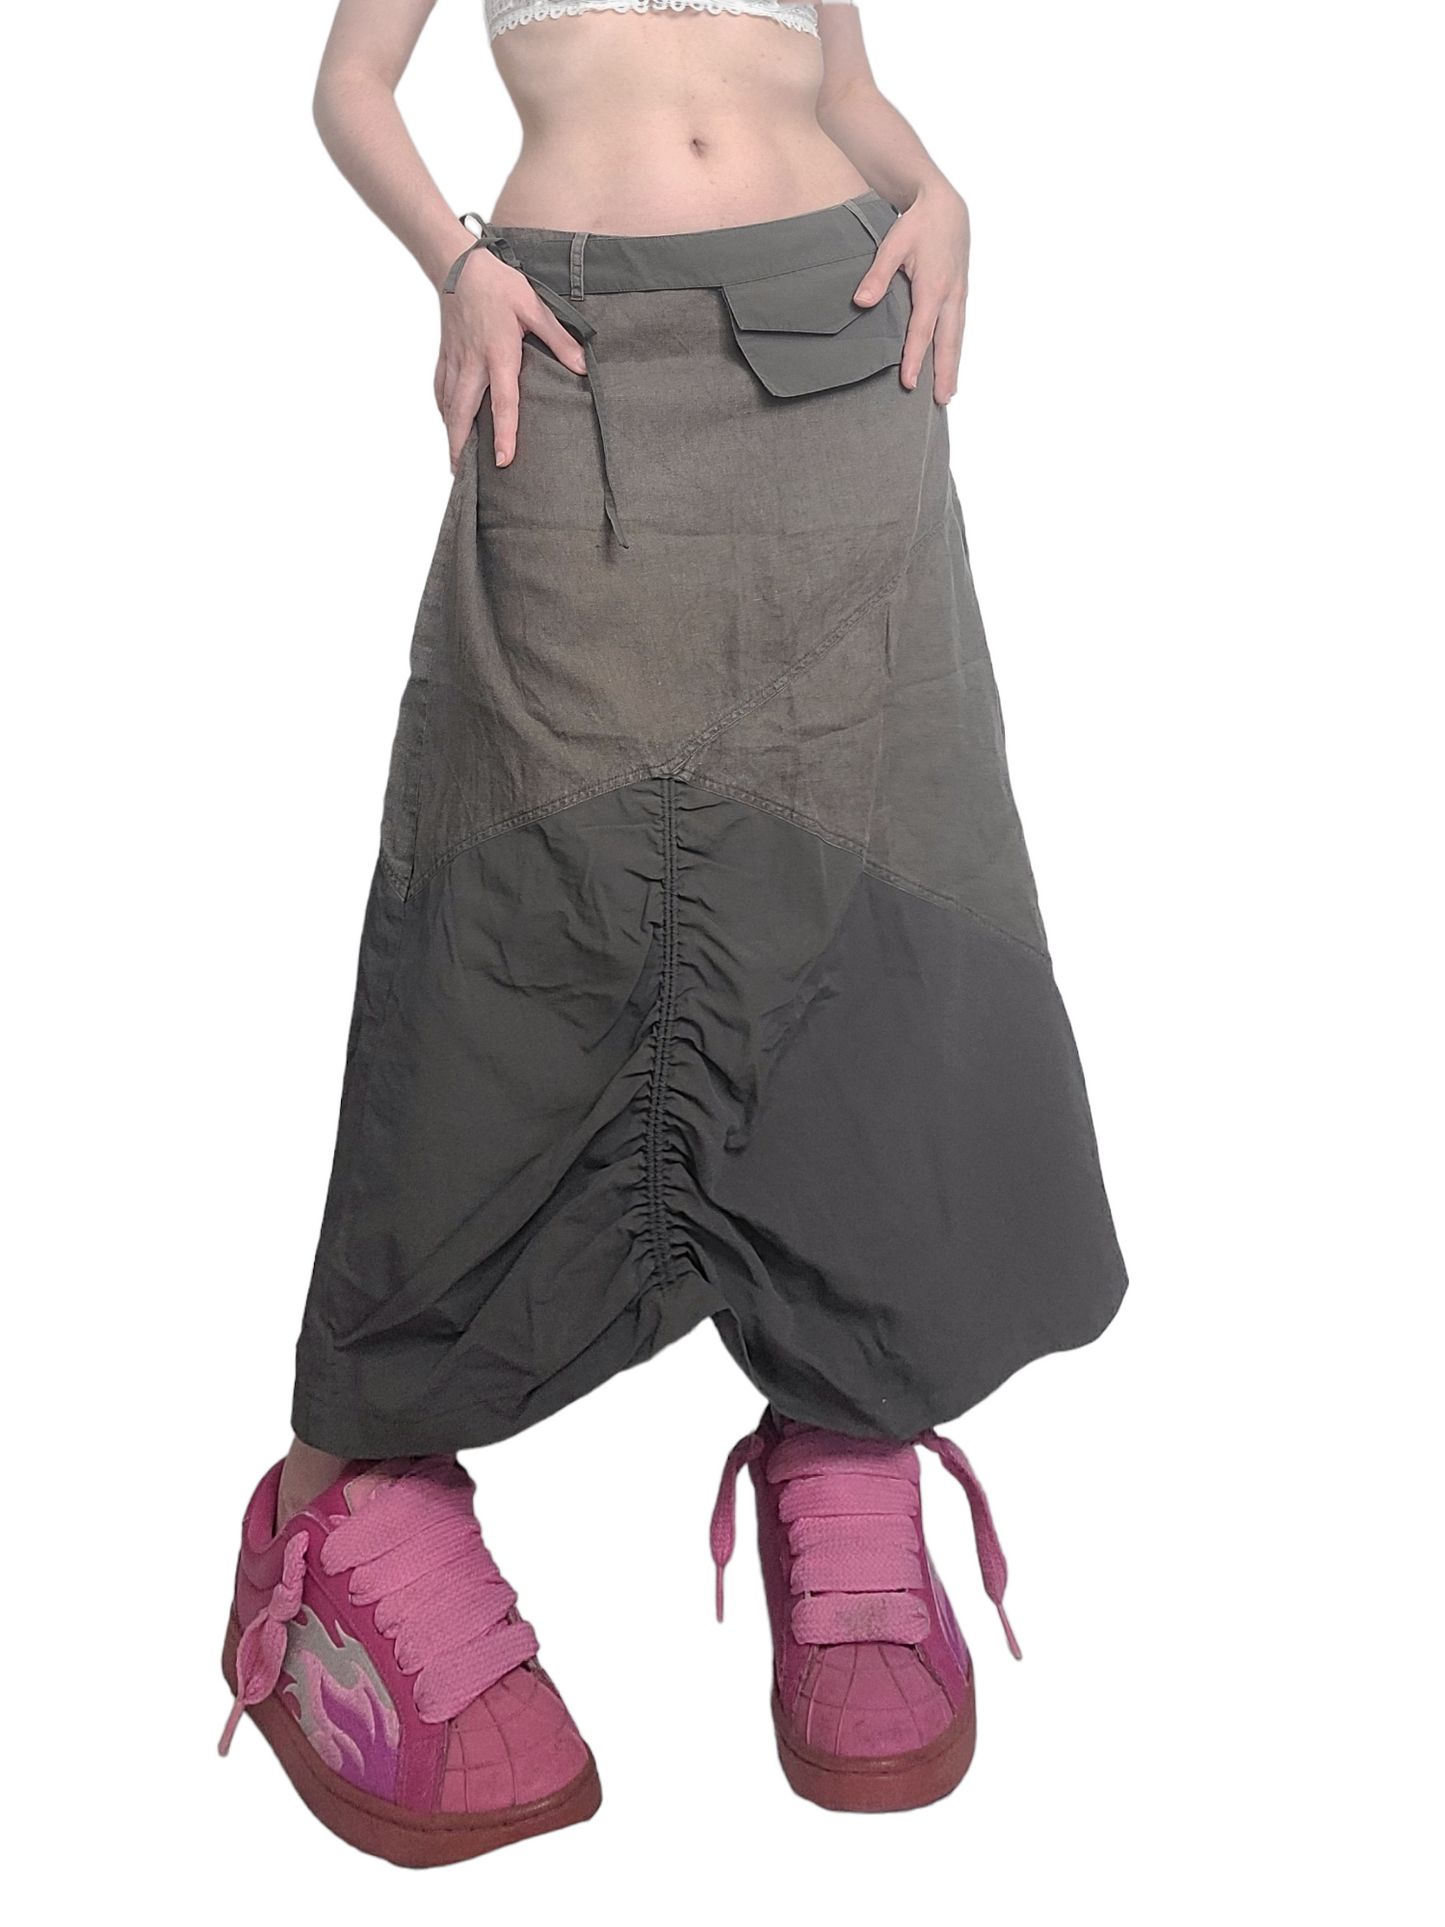 Maxi skirt jupe longue lin vintage gorpcore kaki bi matiere sportwear multipoches techwear post apo dystopian techwear utility gorpcore